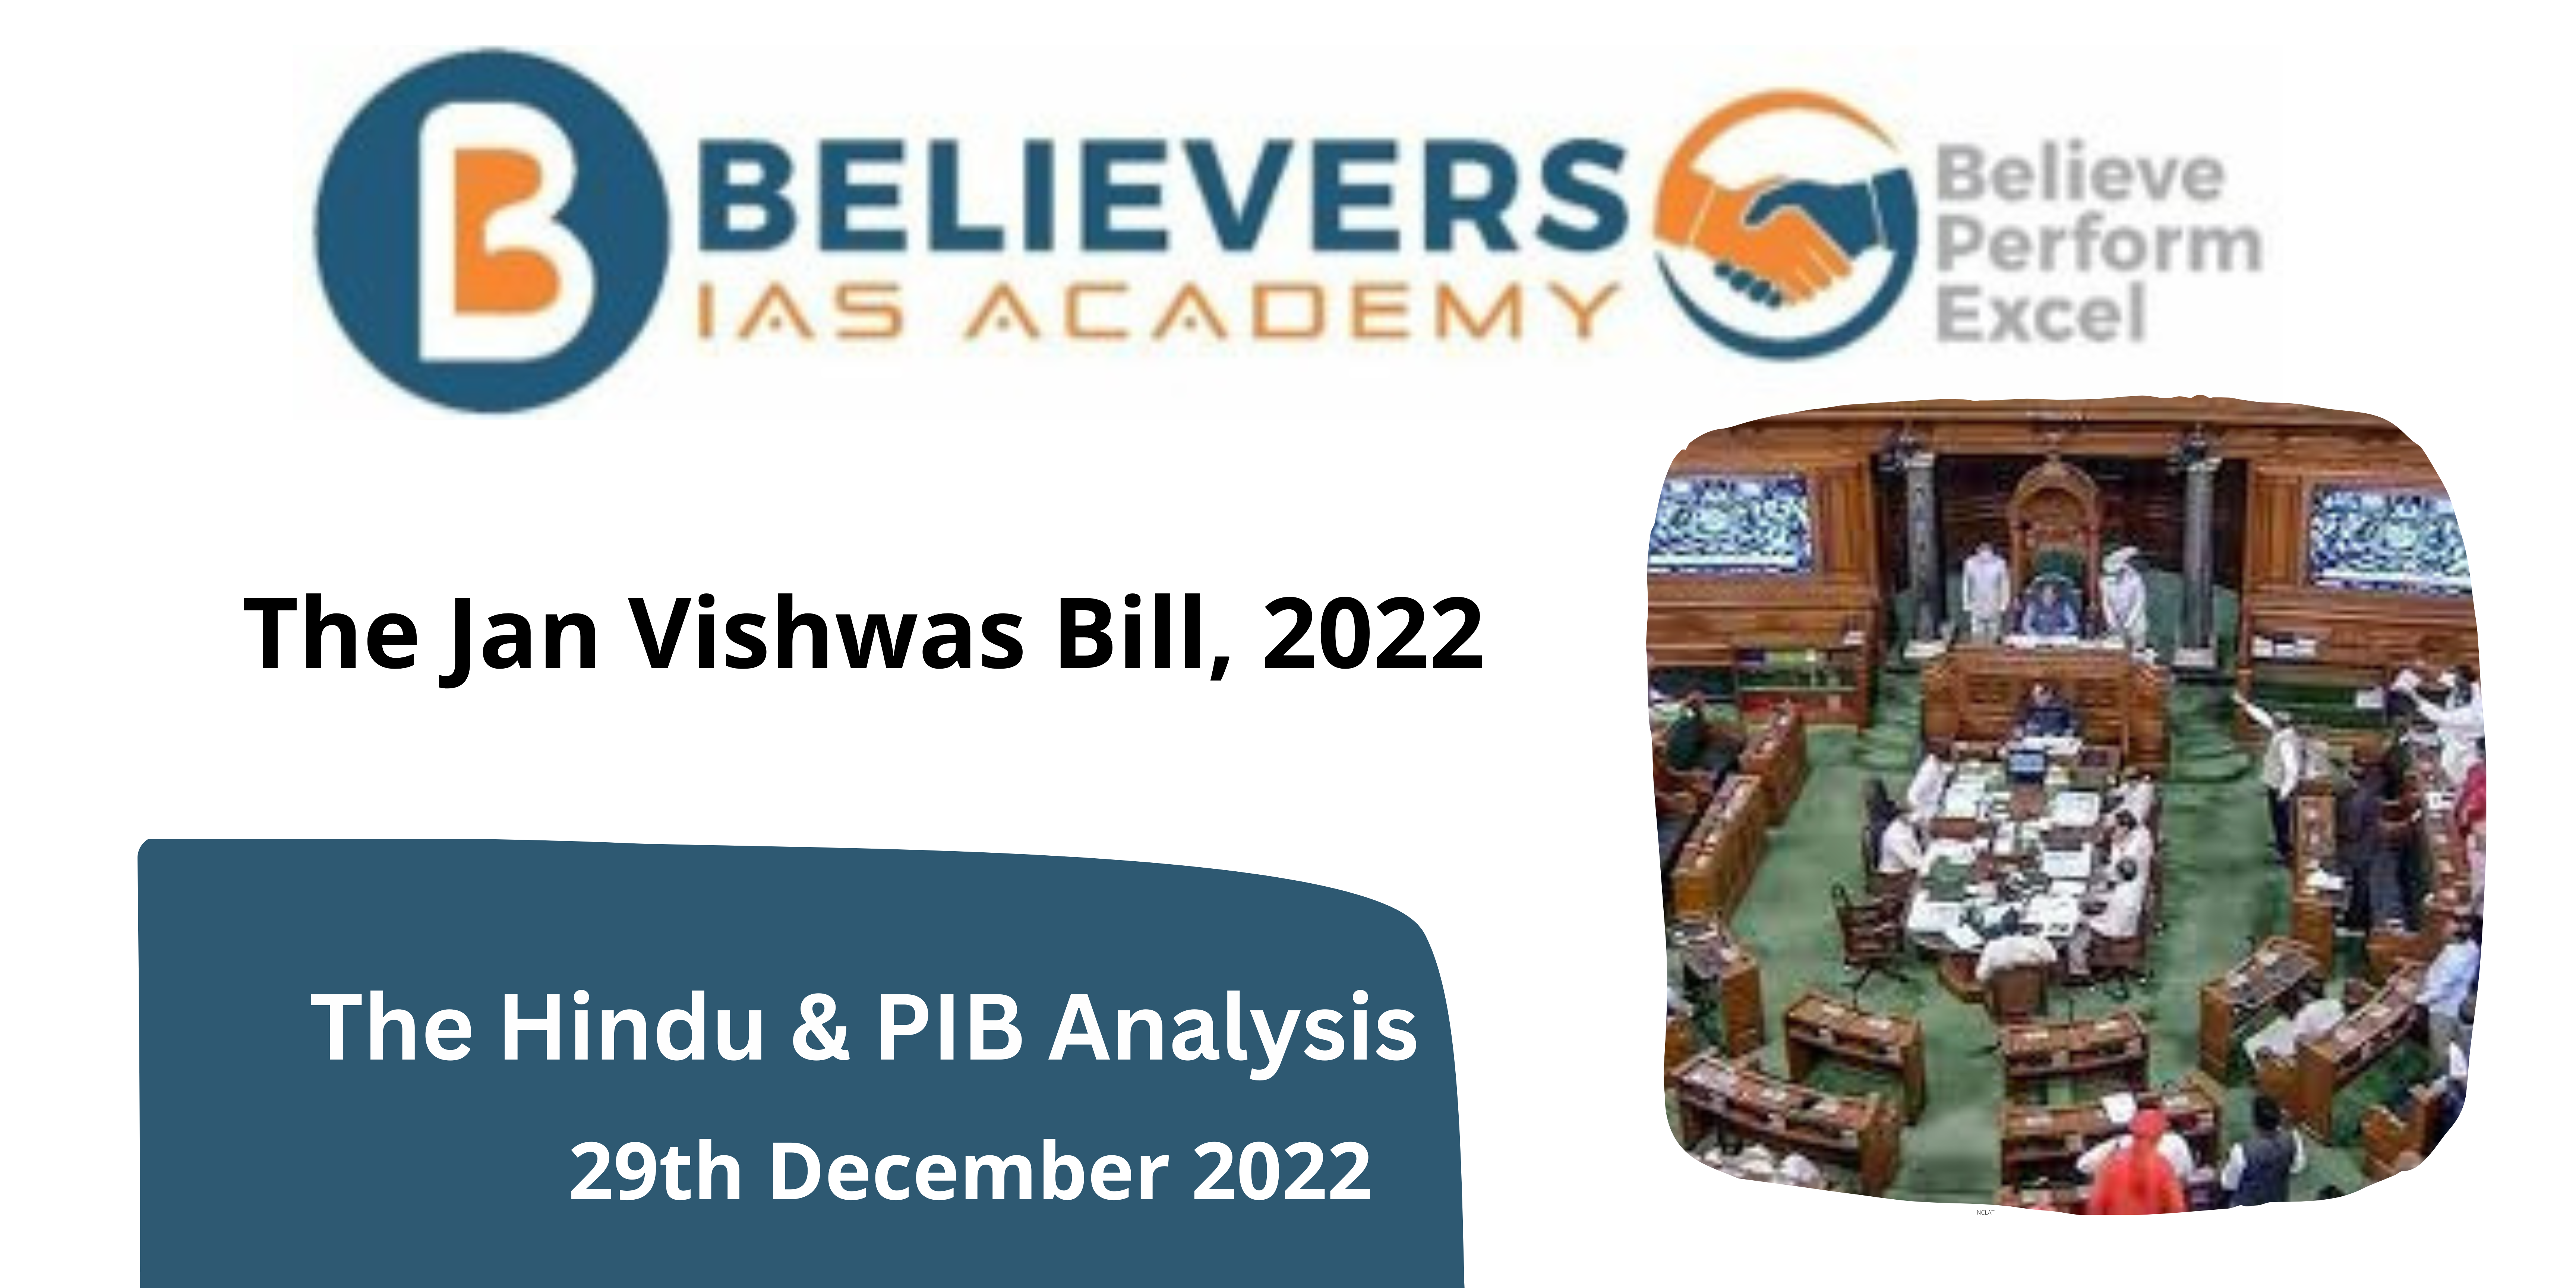 The Jan Vishwas Bill, 2022